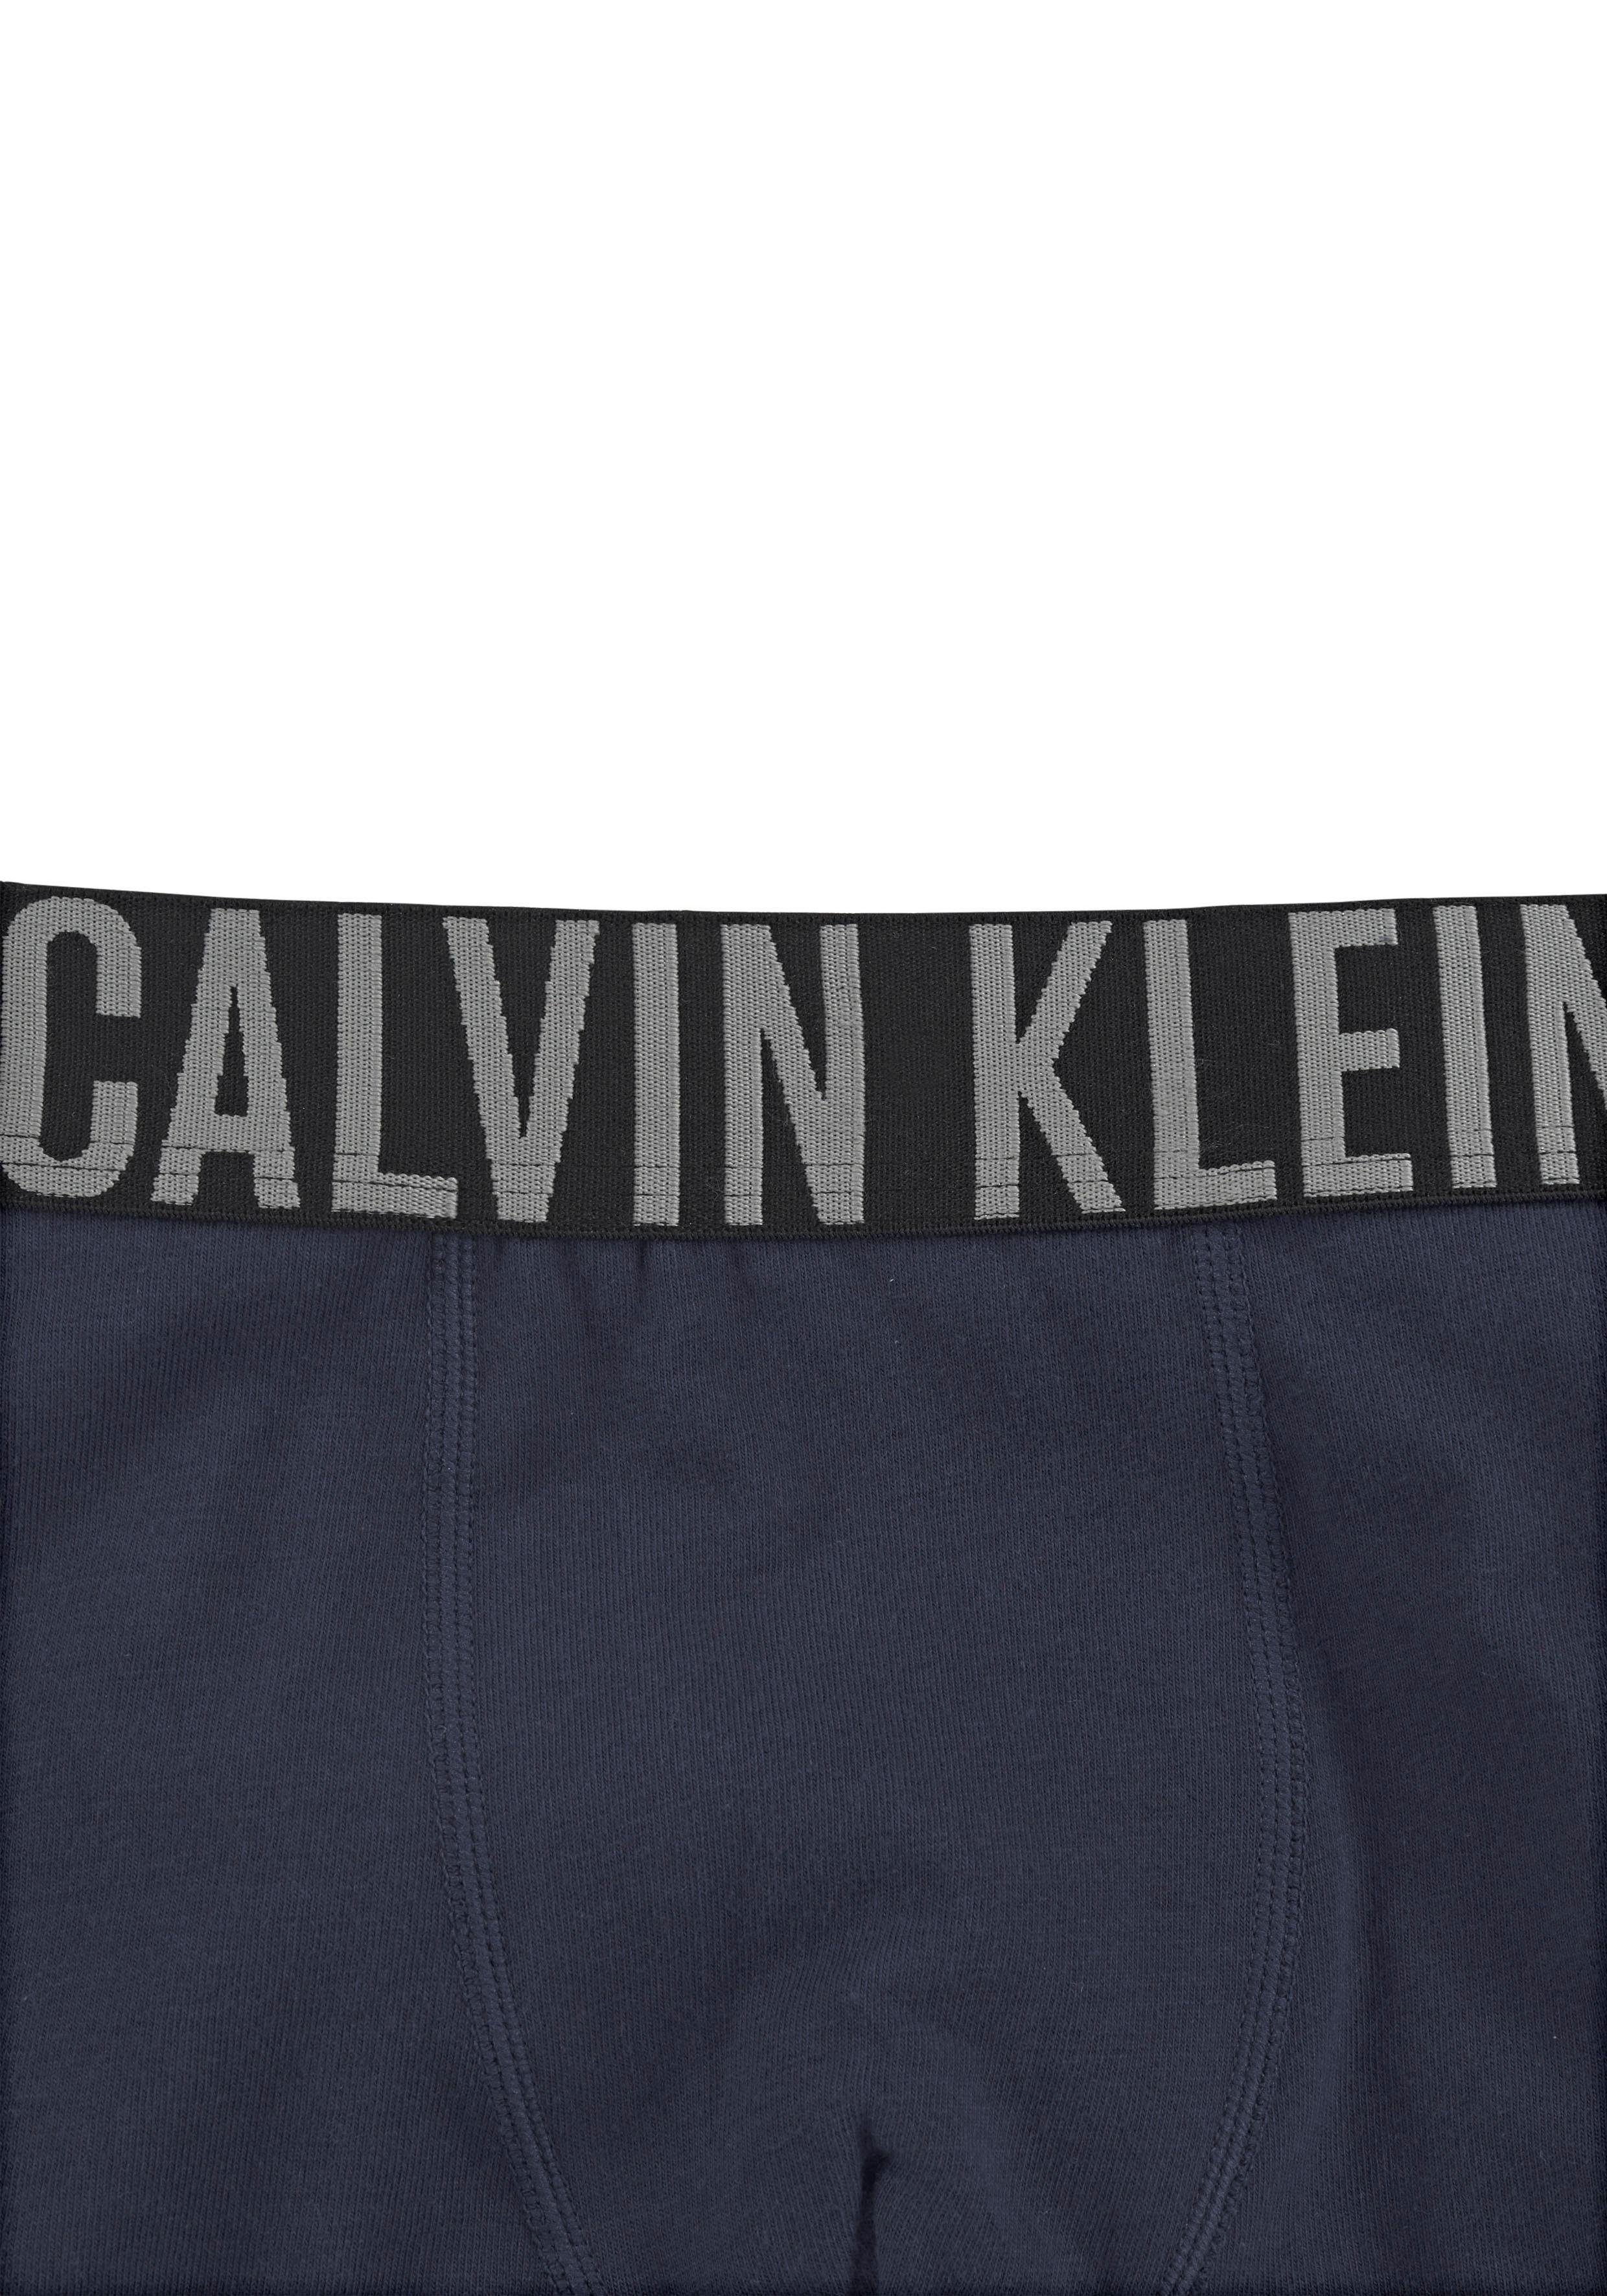 Calvin Klein Underwear Trunk Kinder navy Kids Power MiniMe grau-meliert, (2-St) Junior Intenese